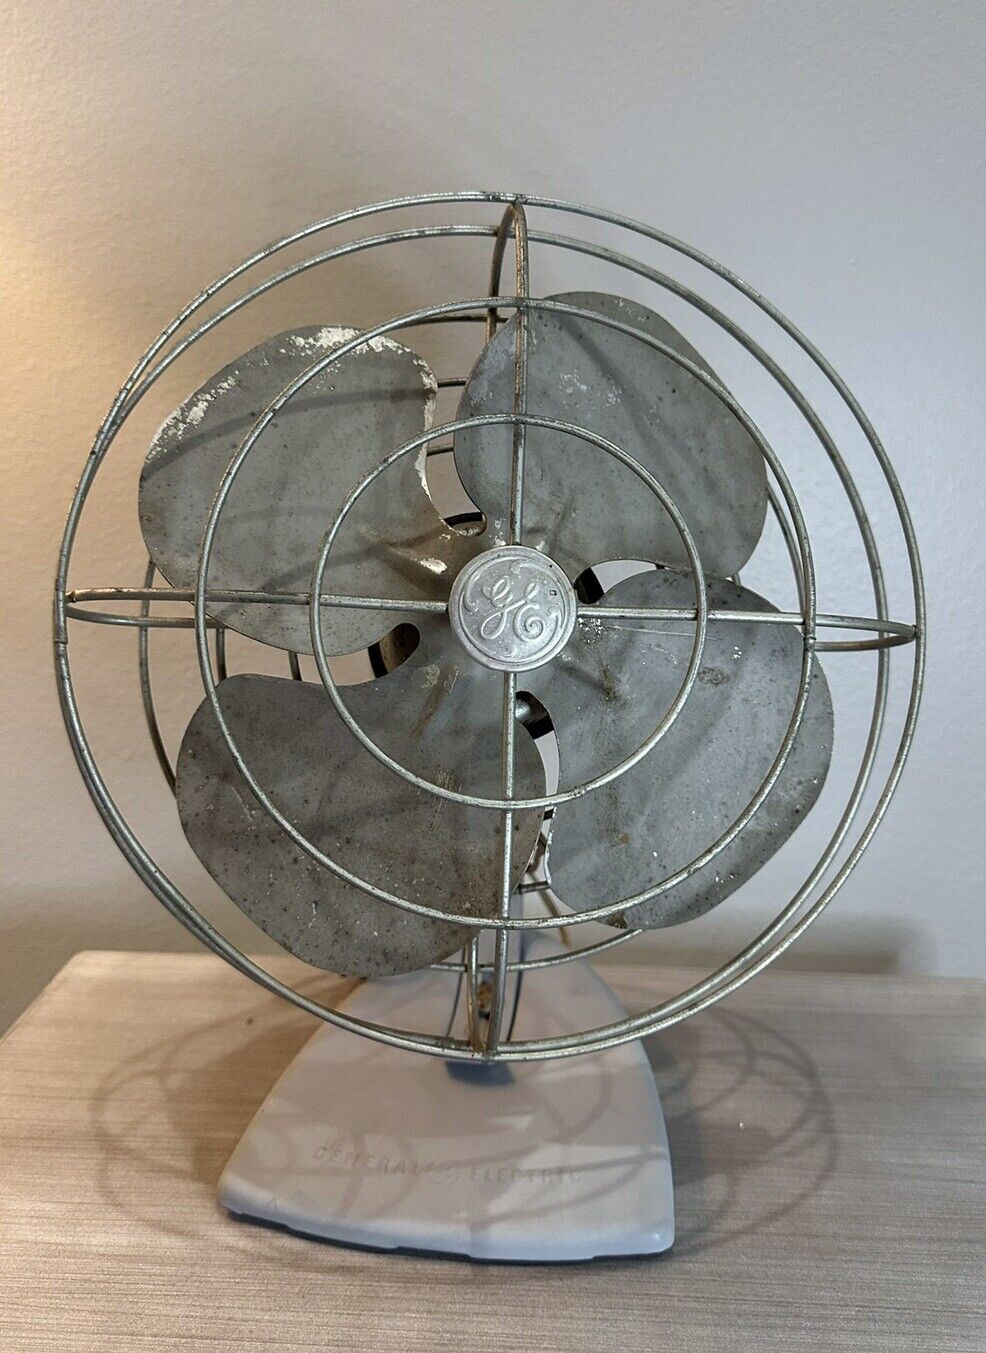 Vintage GE General Electric Fan - WORKS Corded Desk Fan Rotates